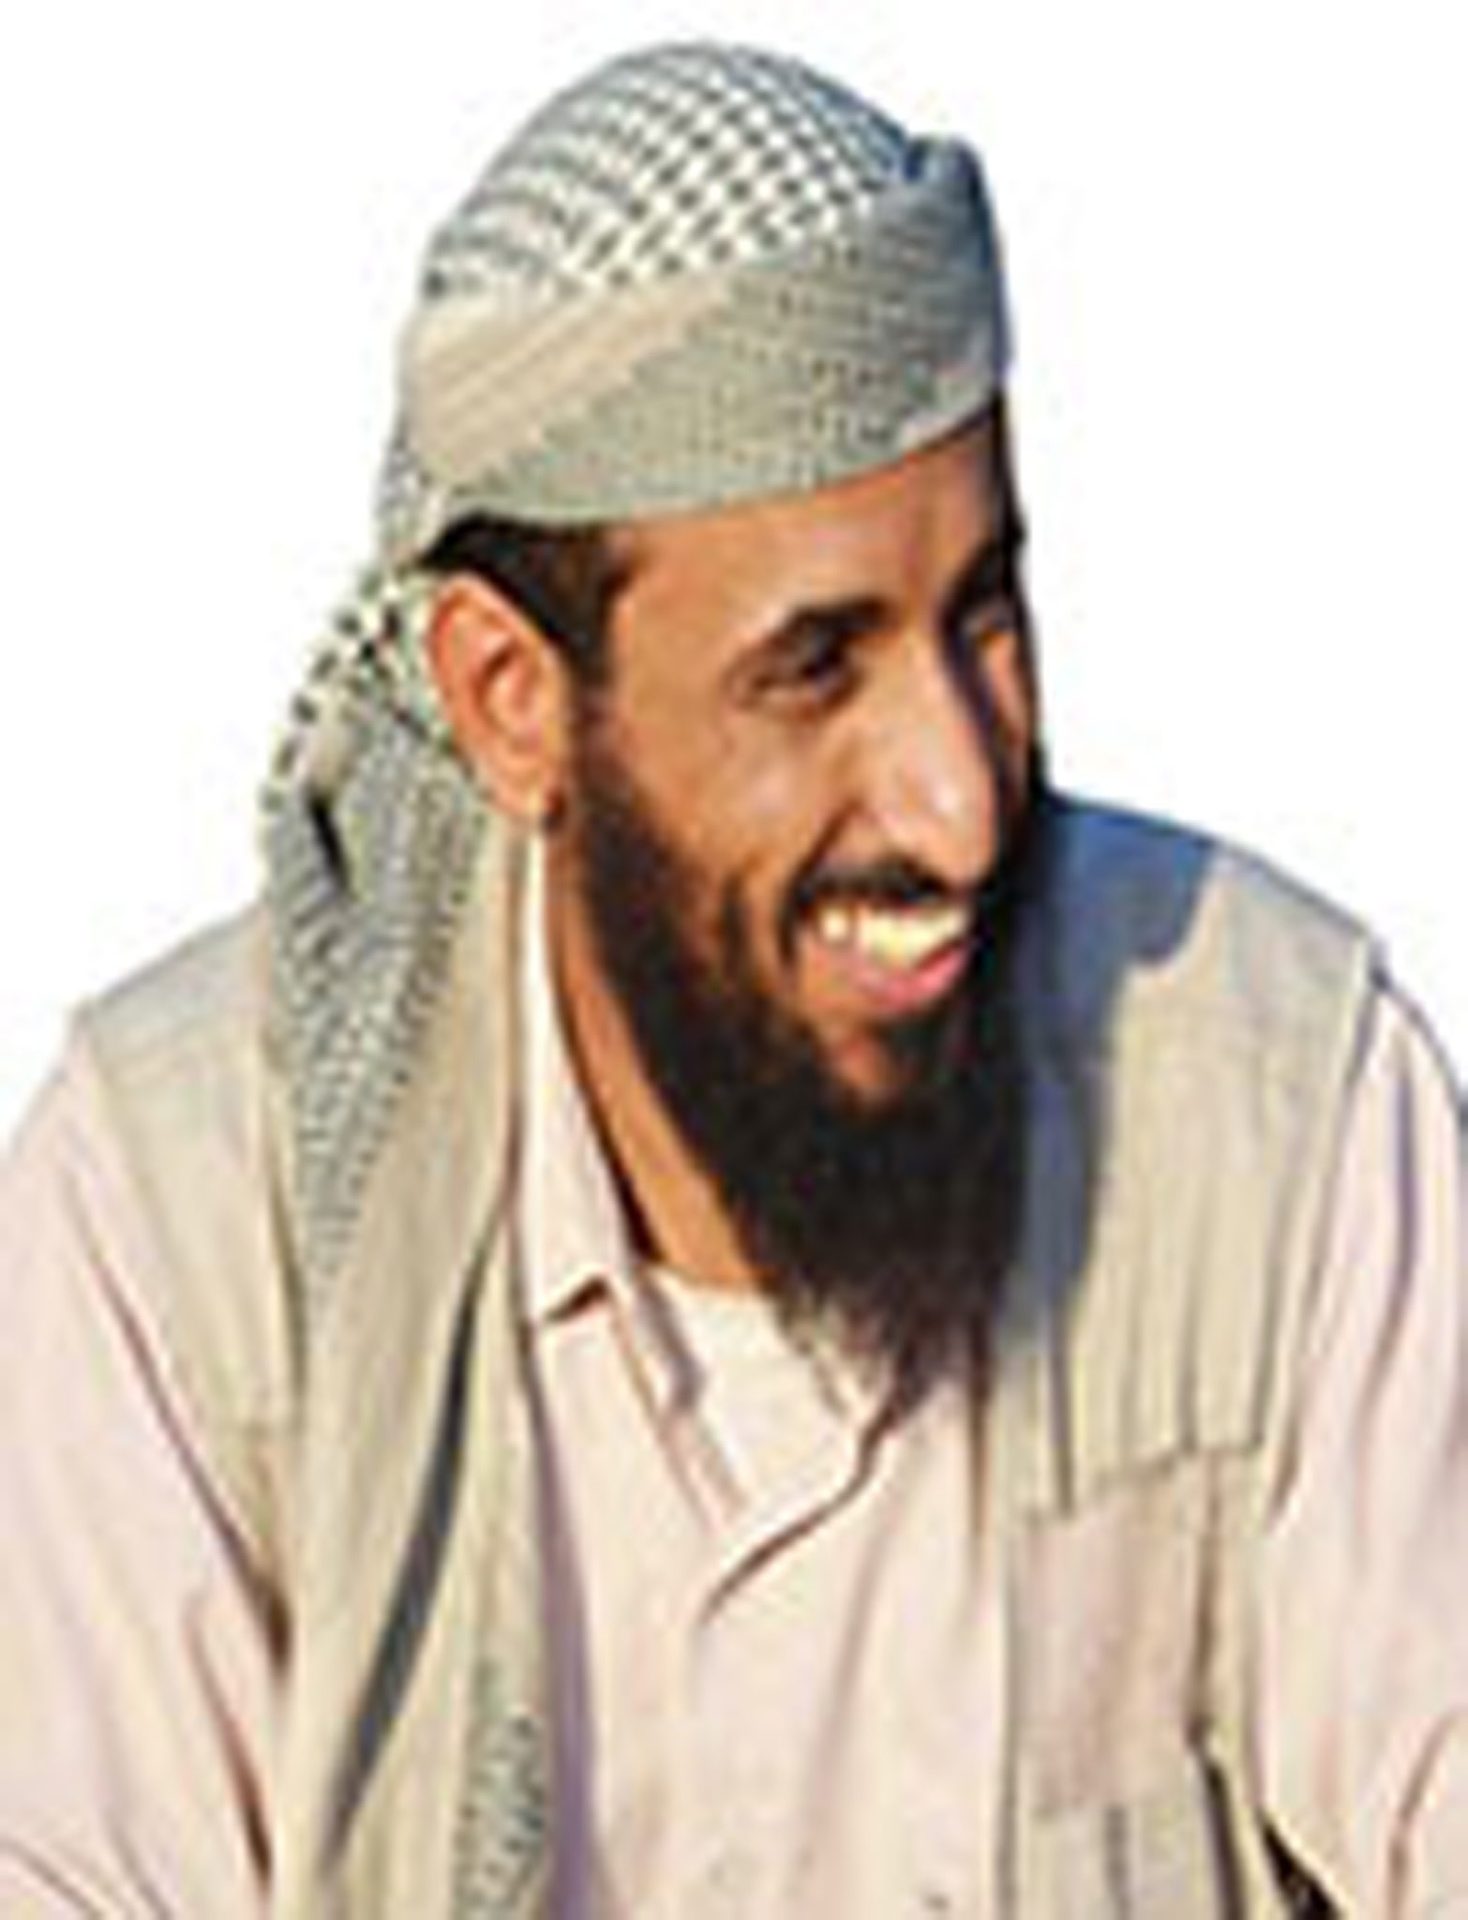 Al-Qaida confirma morte de líder em ataque com drone